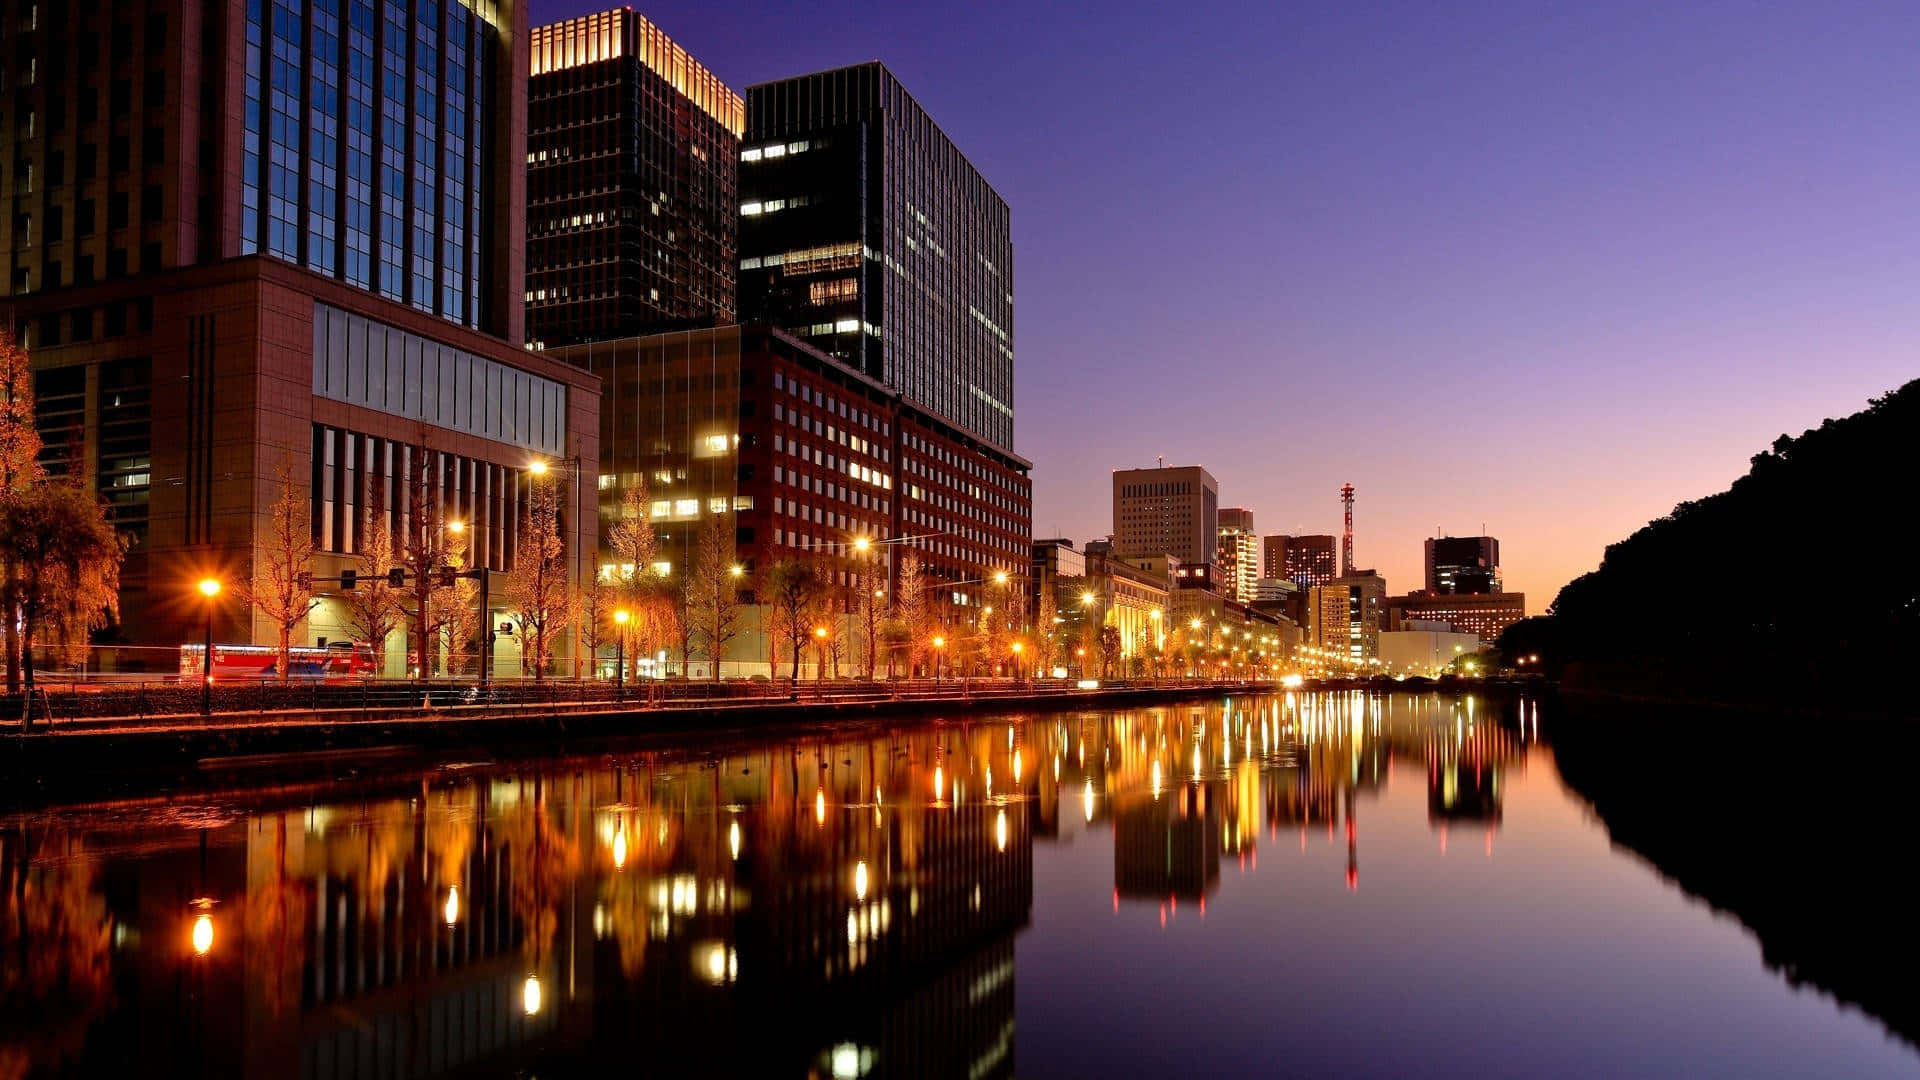 Hintergrundbildvon Tokyo Mit Straßenbeleuchtung Neben Einem Fluss